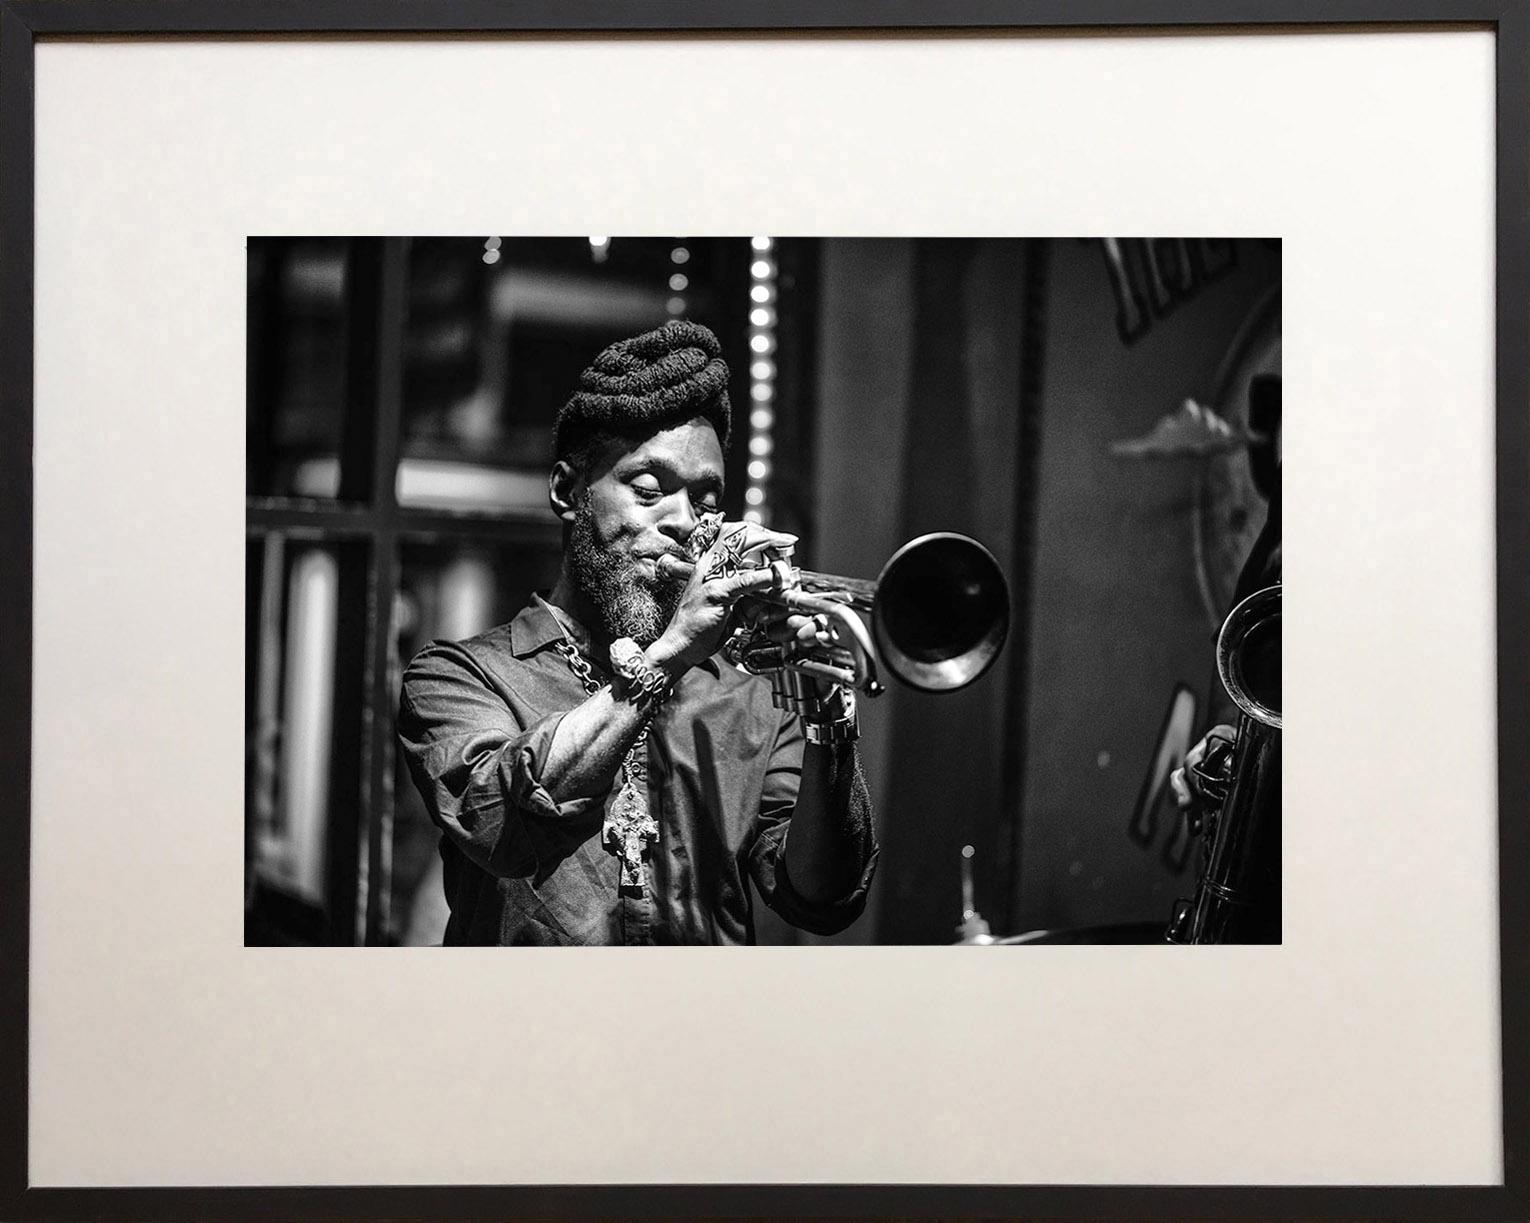 Ein Foto von Mario in einer harmonischen Umarmung mit seiner Trompete... ein magischer Moment in einem Jazzclub in New Orleans.

James Sparshatts Fotografien von Musik und Tanz fangen die Emotionen und die Intensität von Menschen ein, die sich im